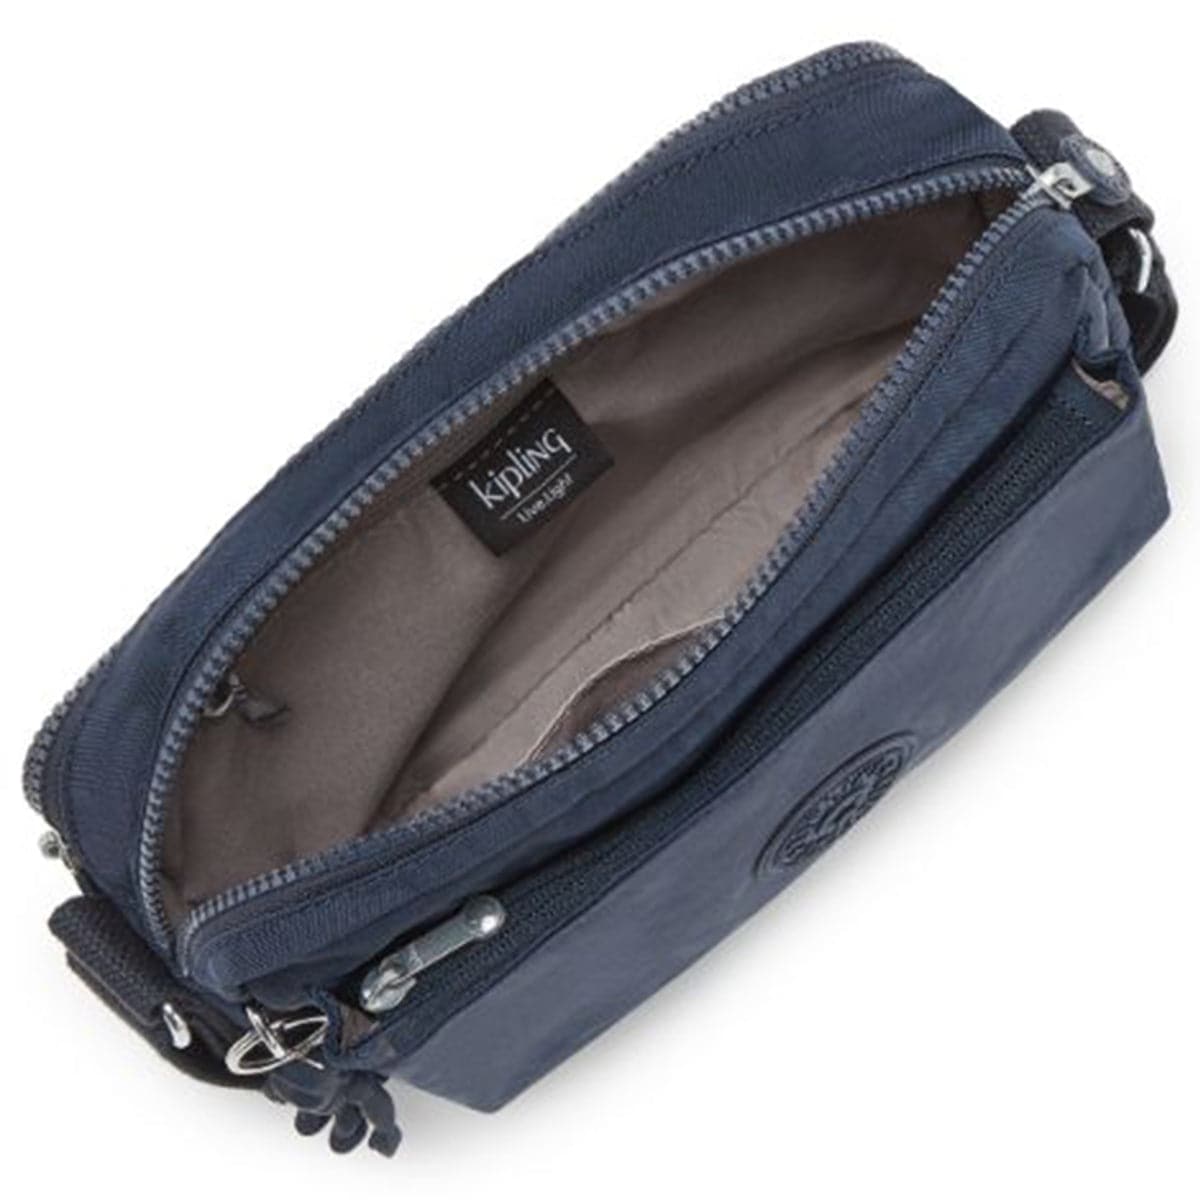 Kipling Abanu Medium Crossbody Bag